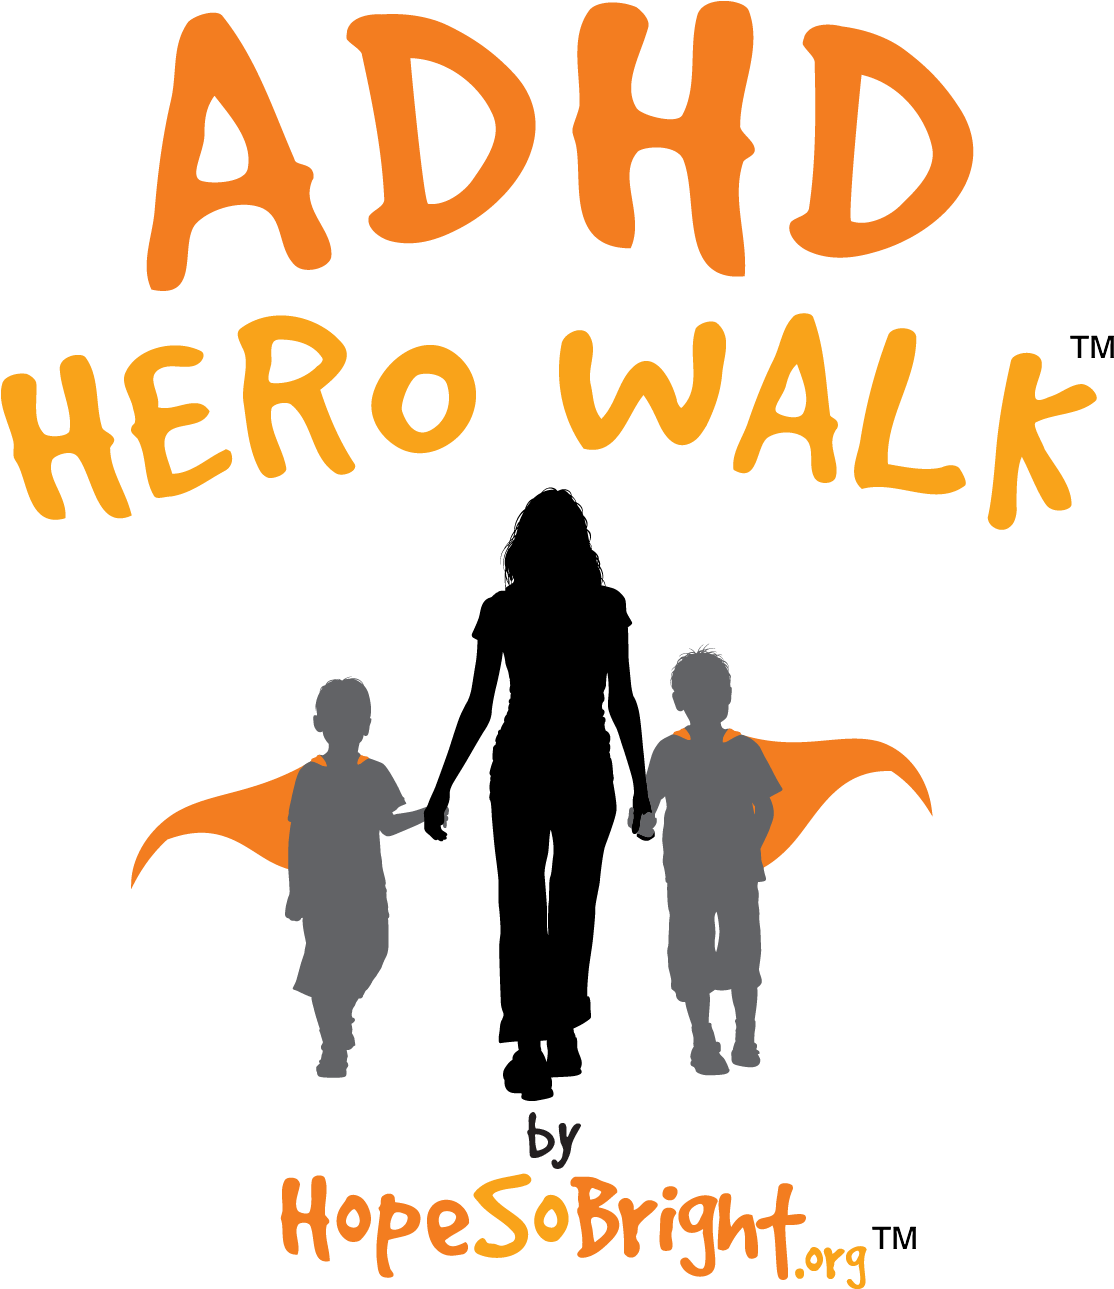 Adhd 5k Hero Walk/run Long Beach - Hope So Bright (1134x1288)